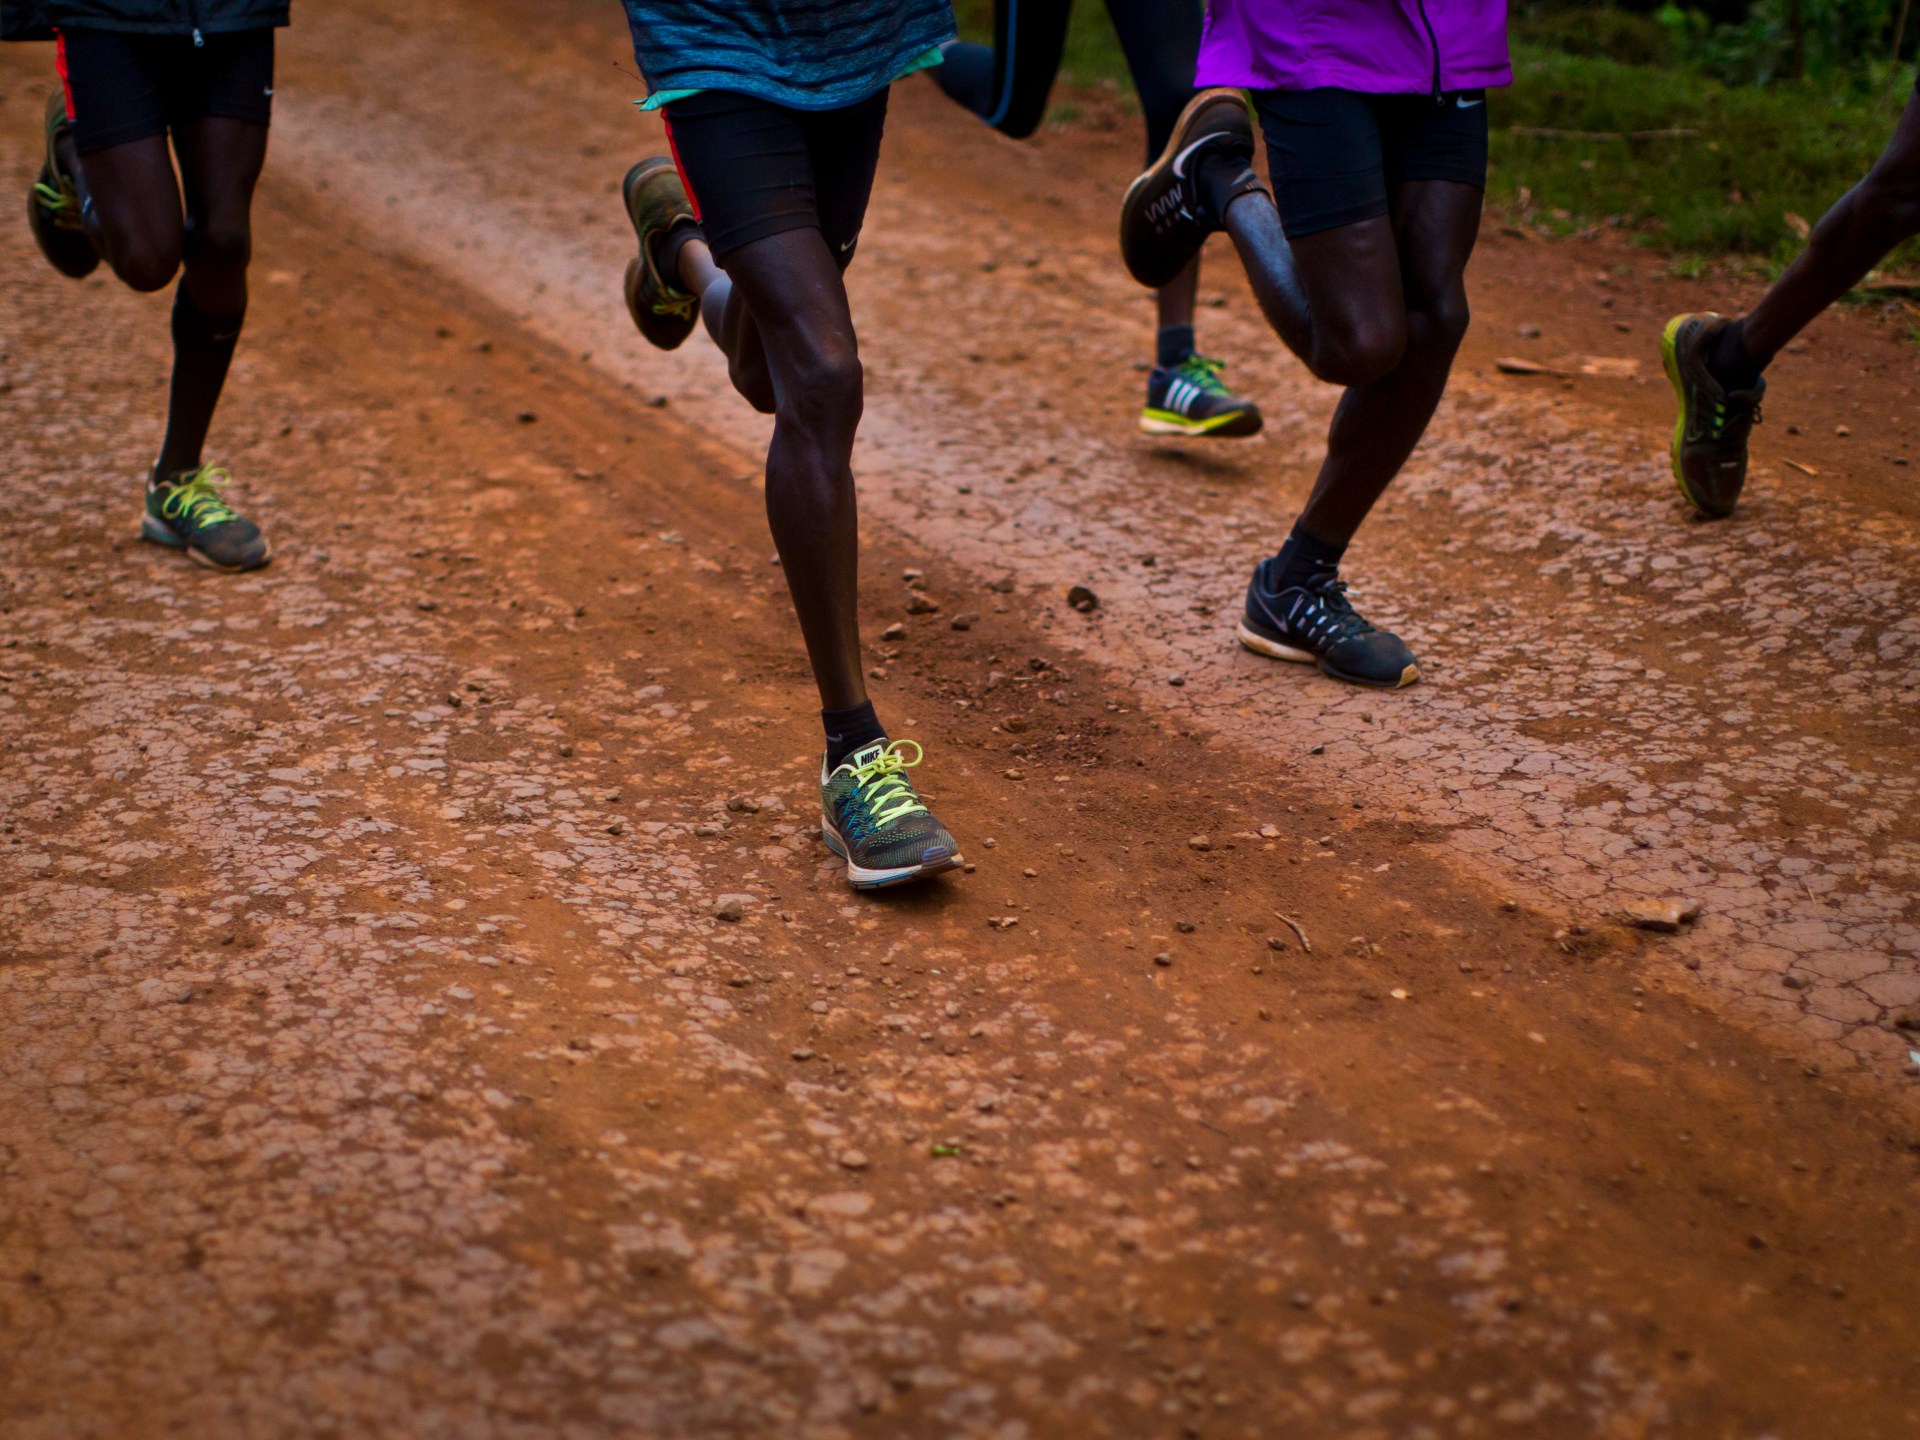 Kenya faces threat of athletics ban amid doping crisis